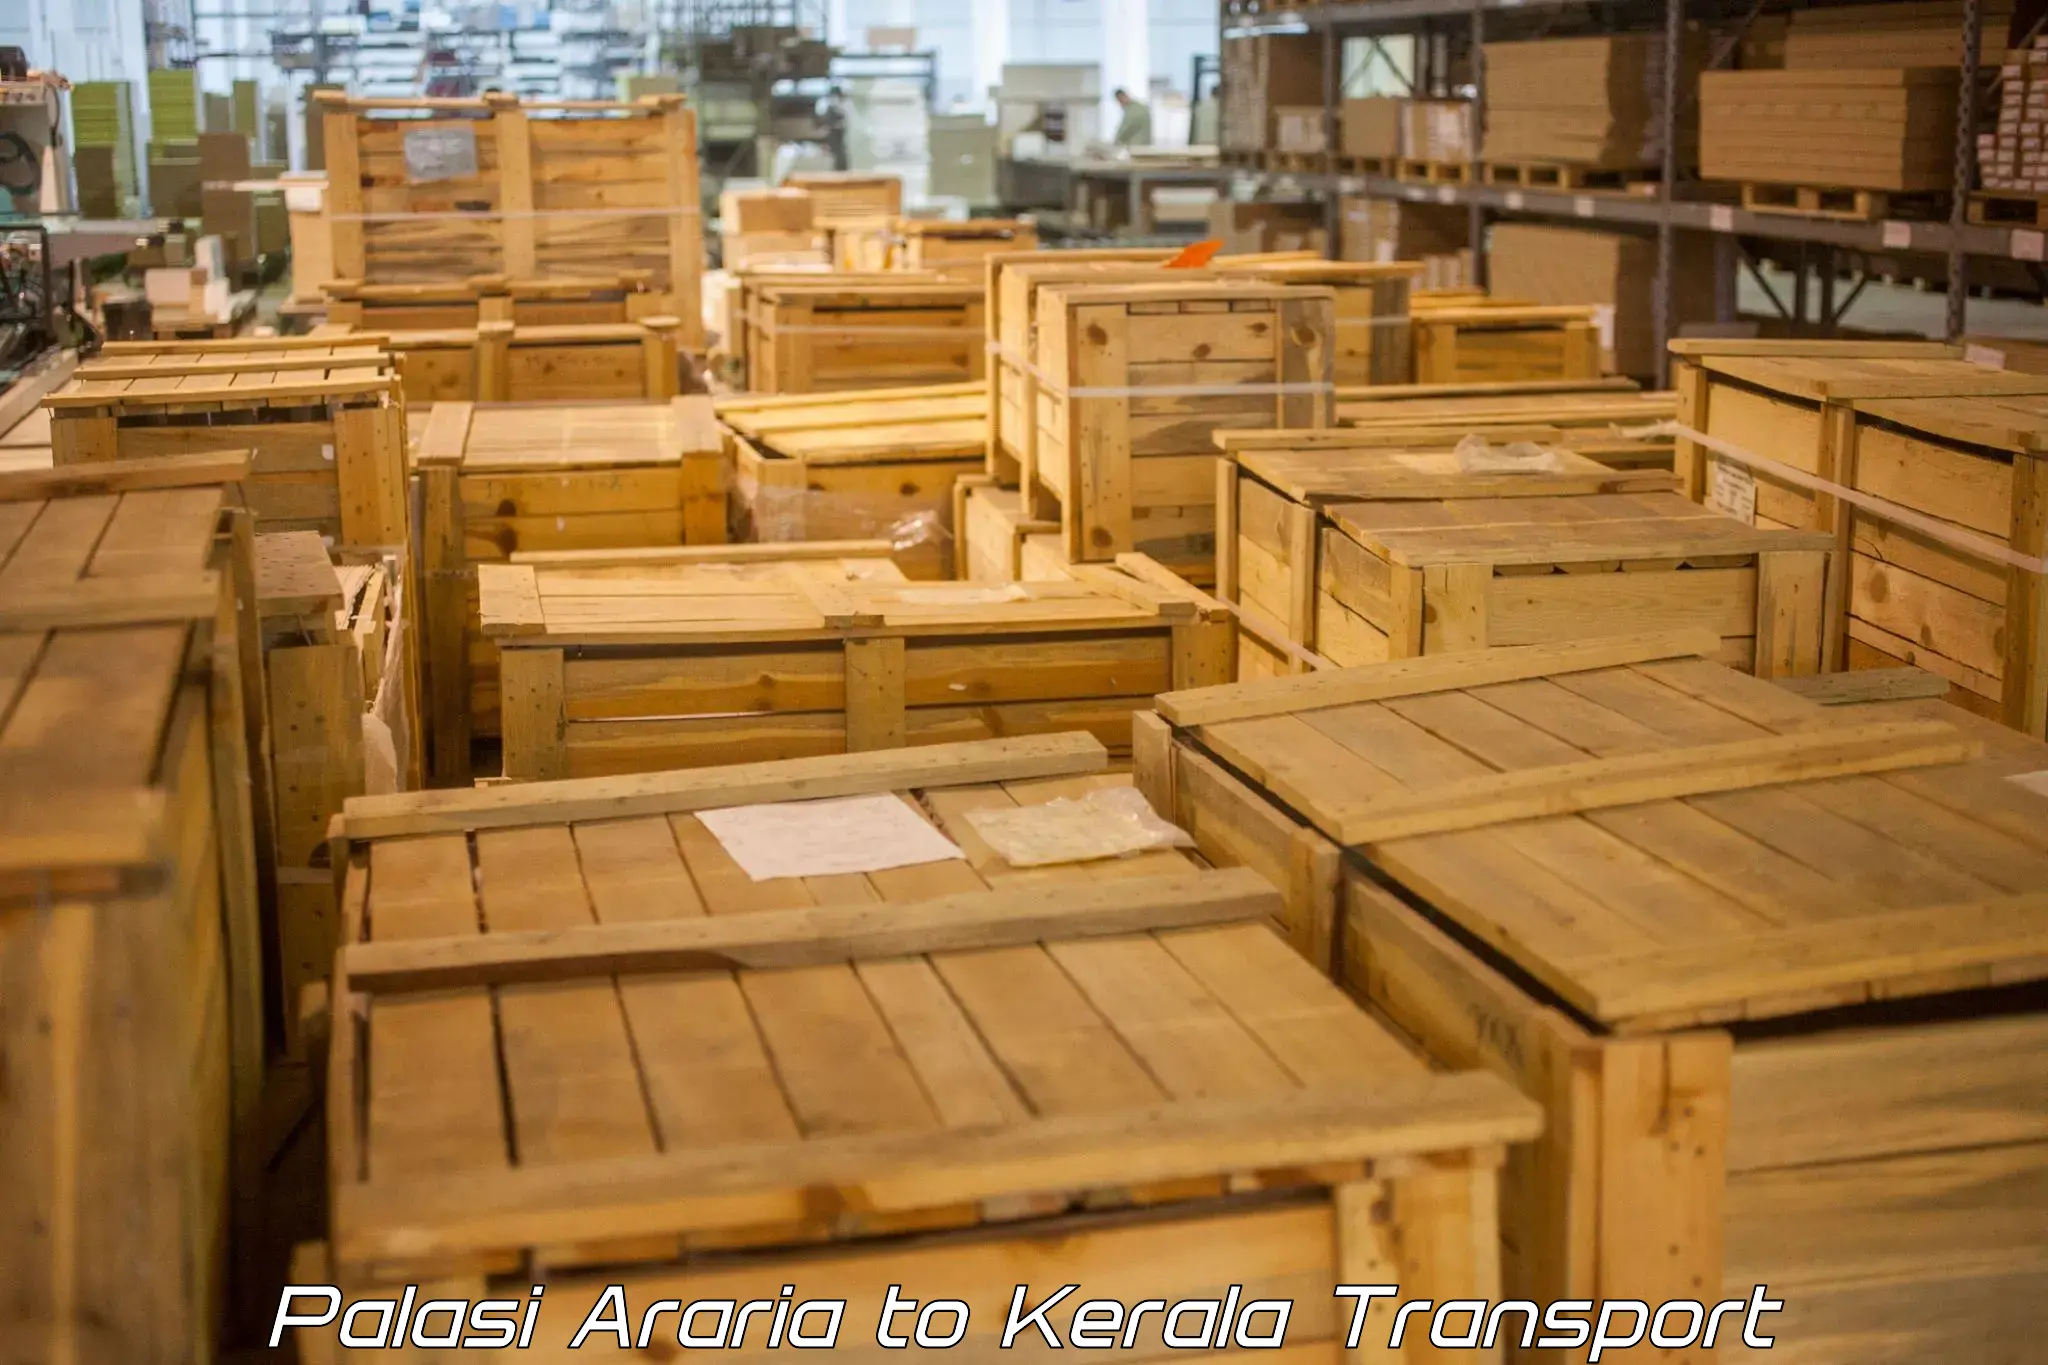 Cargo transport services Palasi Araria to Kottarakkara